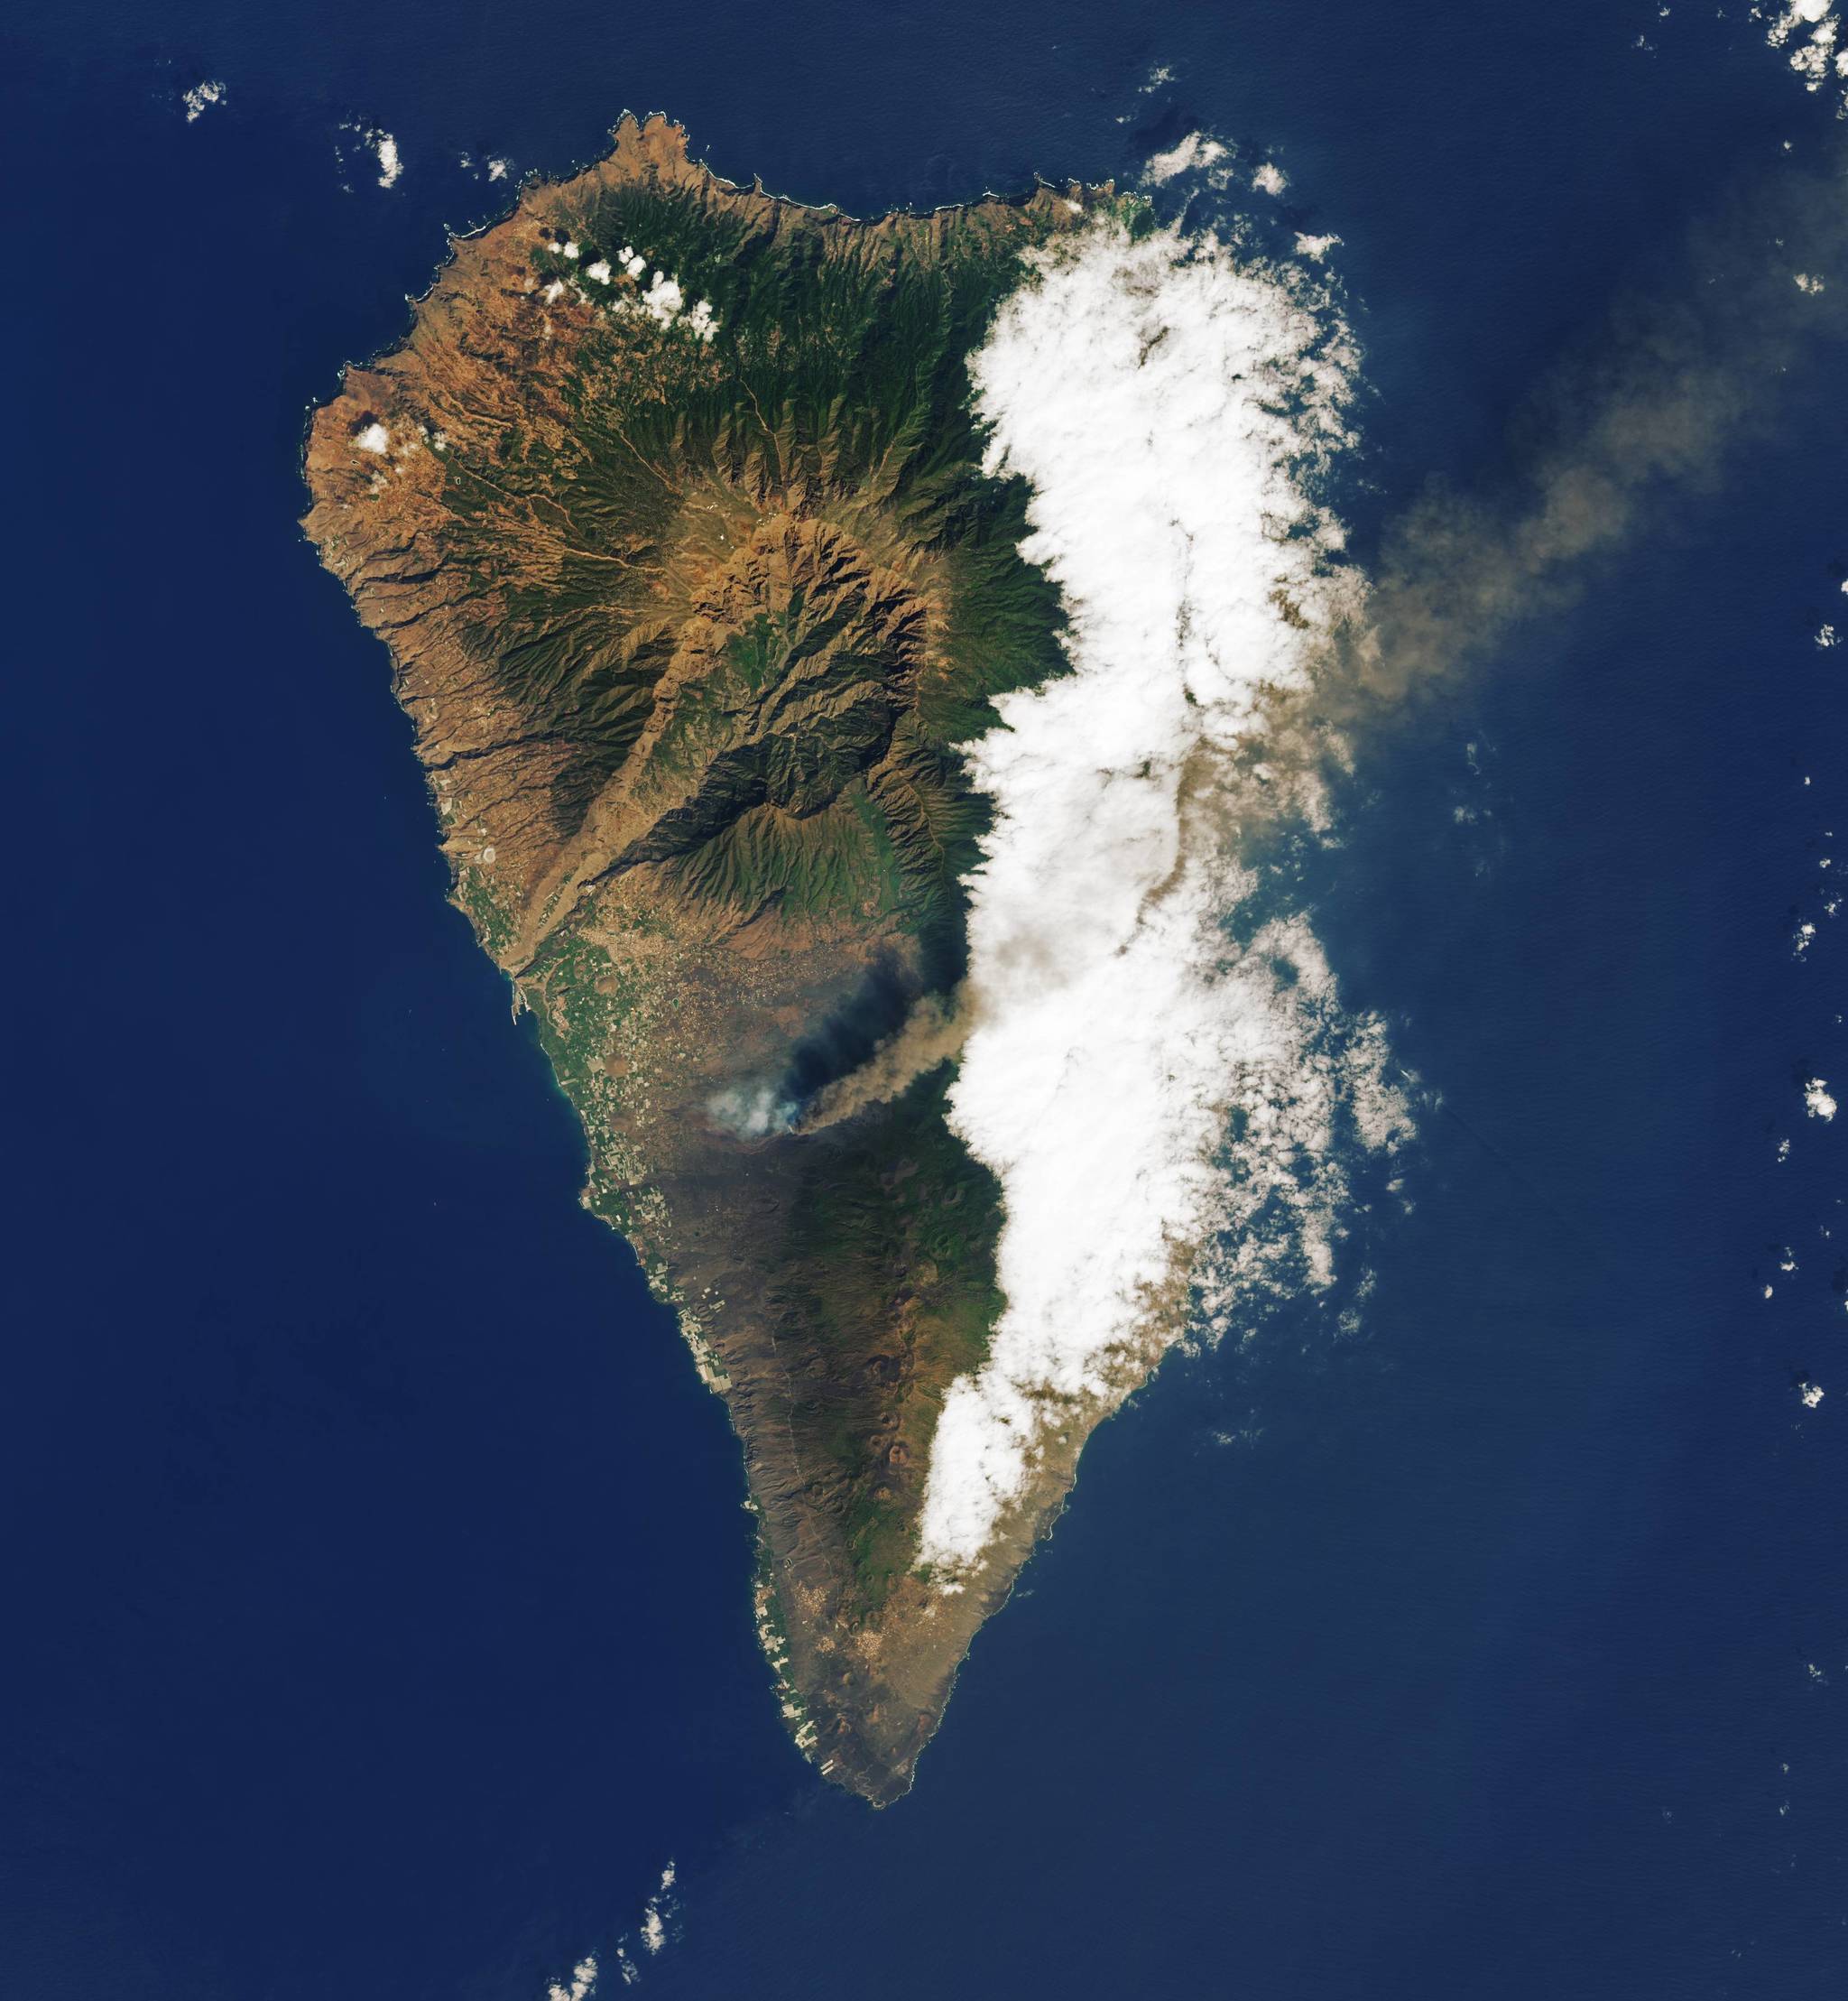 La isla de La Palma visto desde el espacio